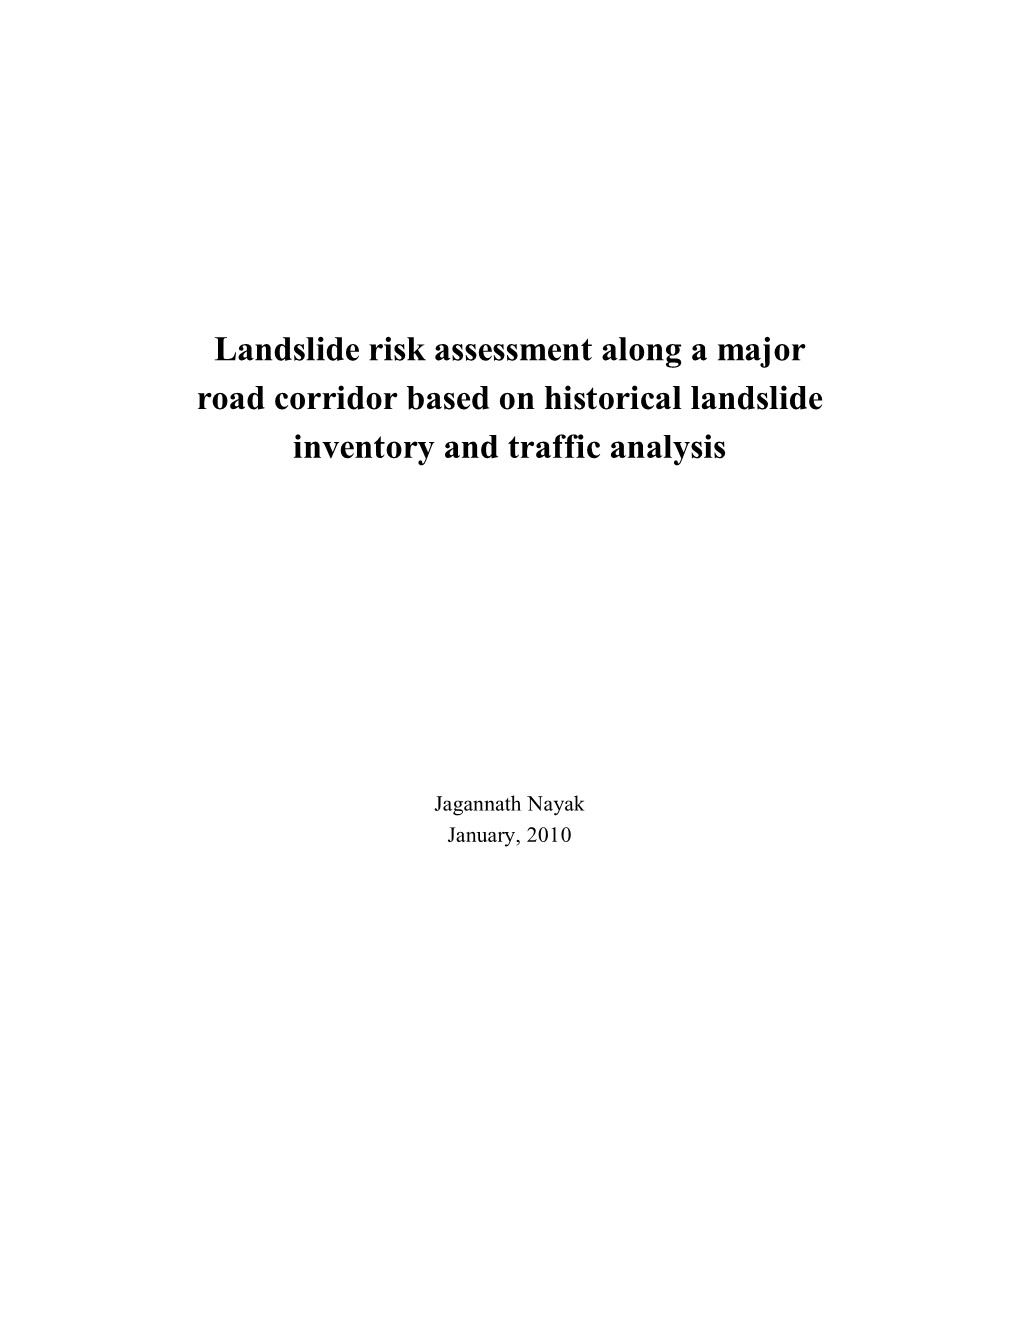 Landslide Risk Assessment Along a Major Road Corridor Based on Historical Landslide Inventory and Traffic Analysis